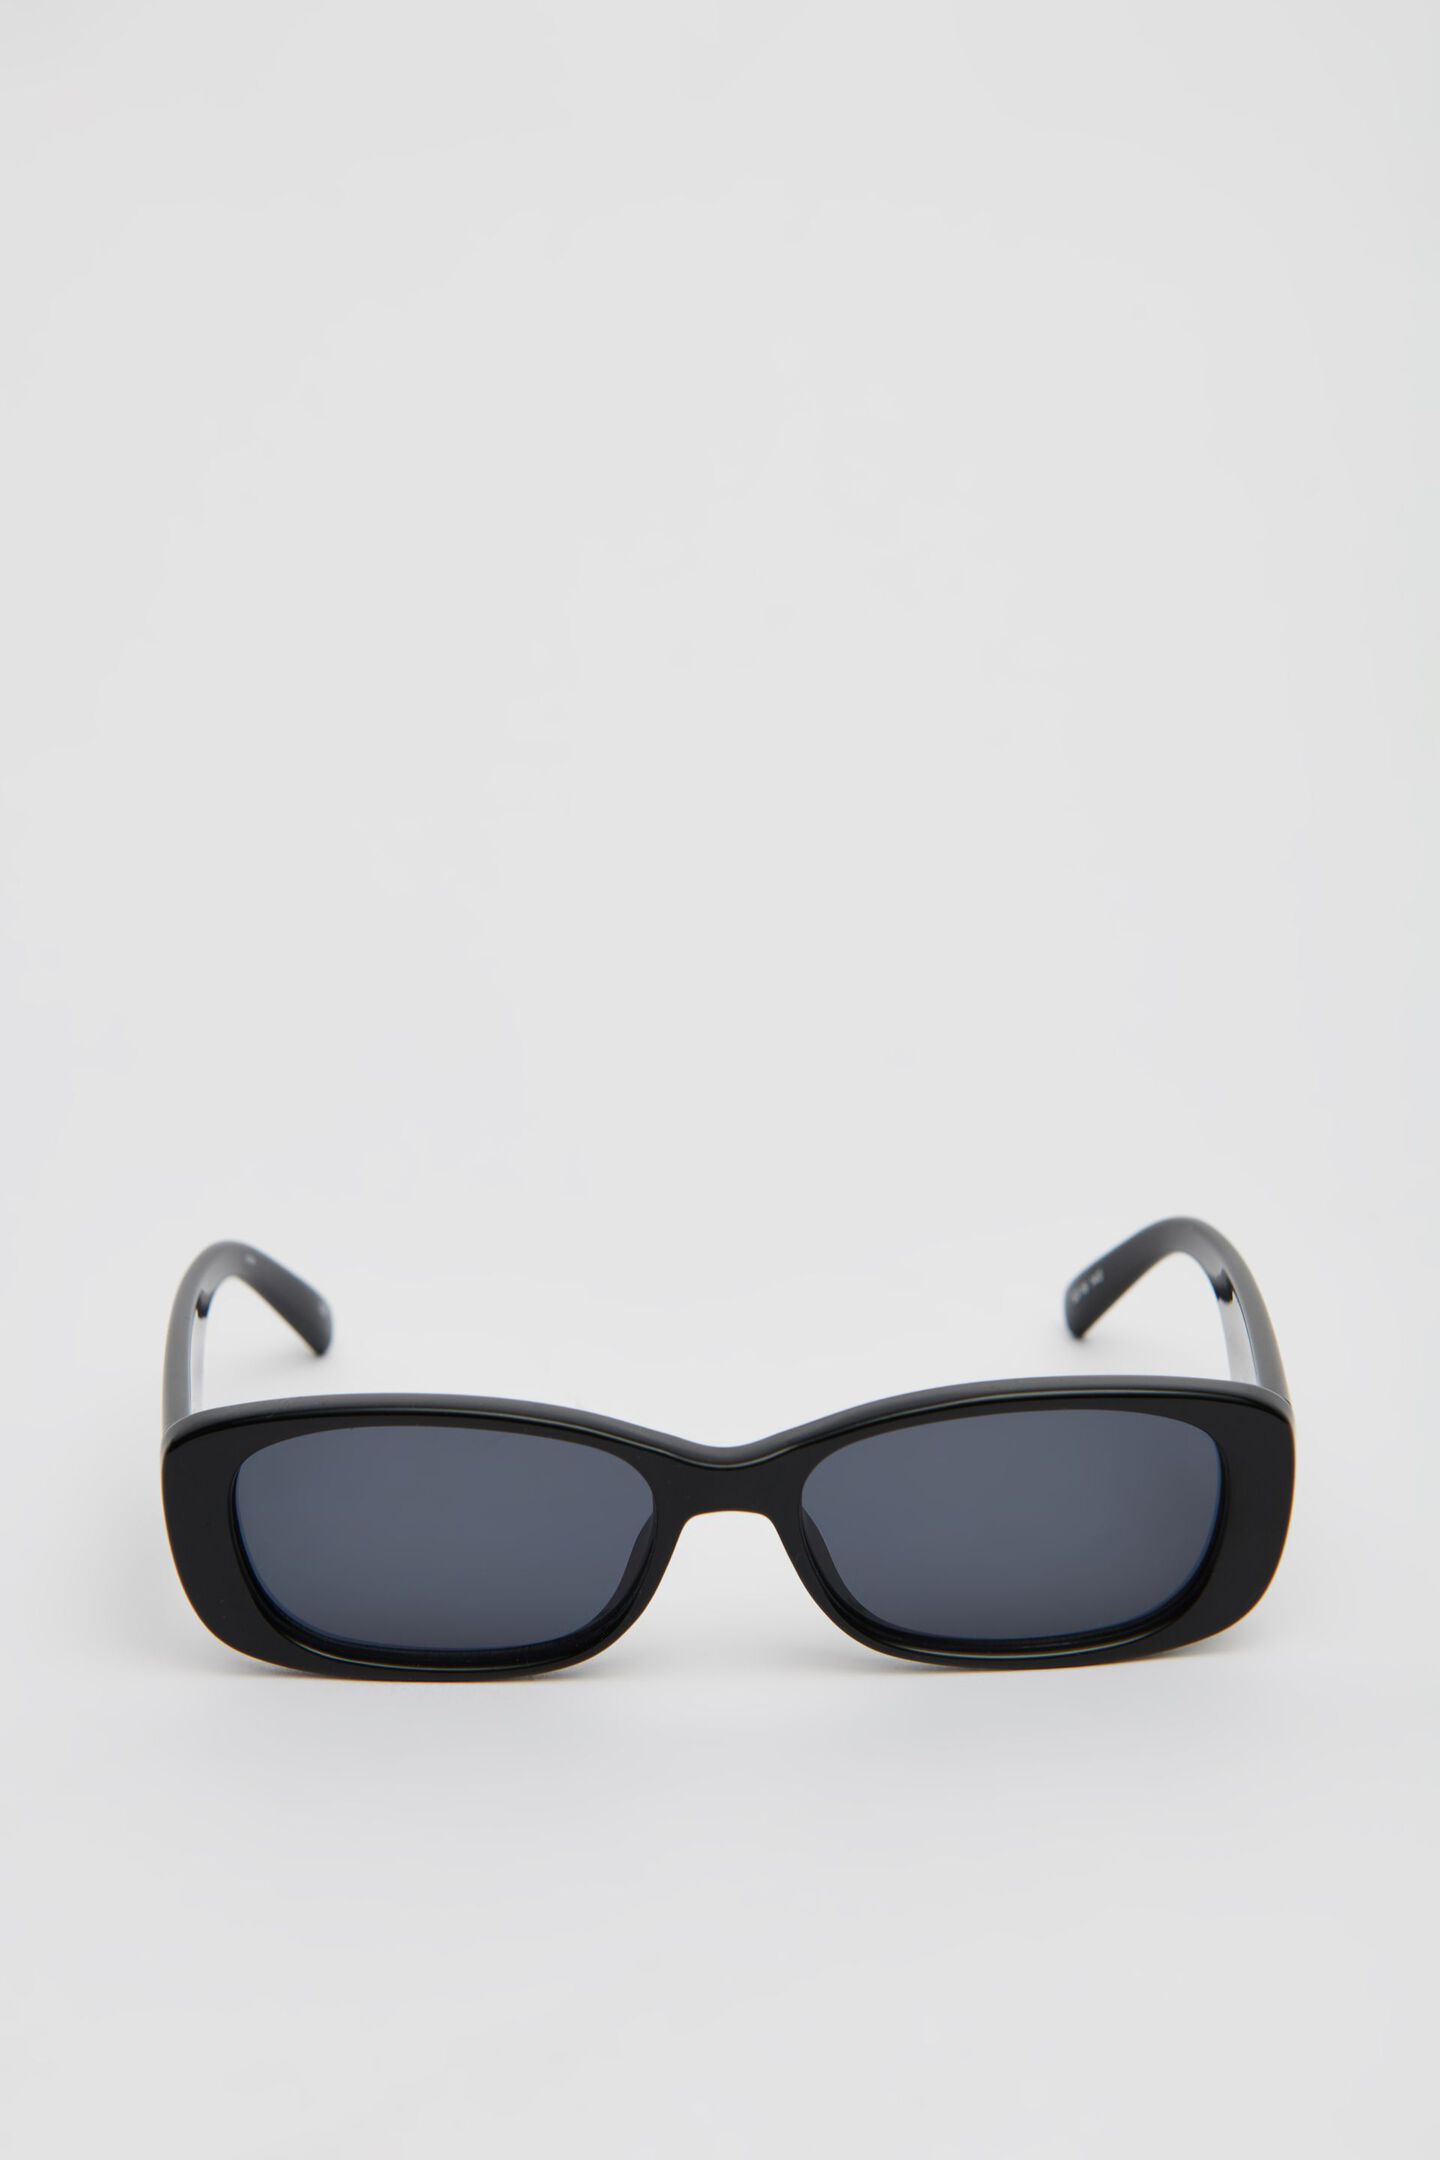 LE SPECS | Unreal Sunglasses | Garage